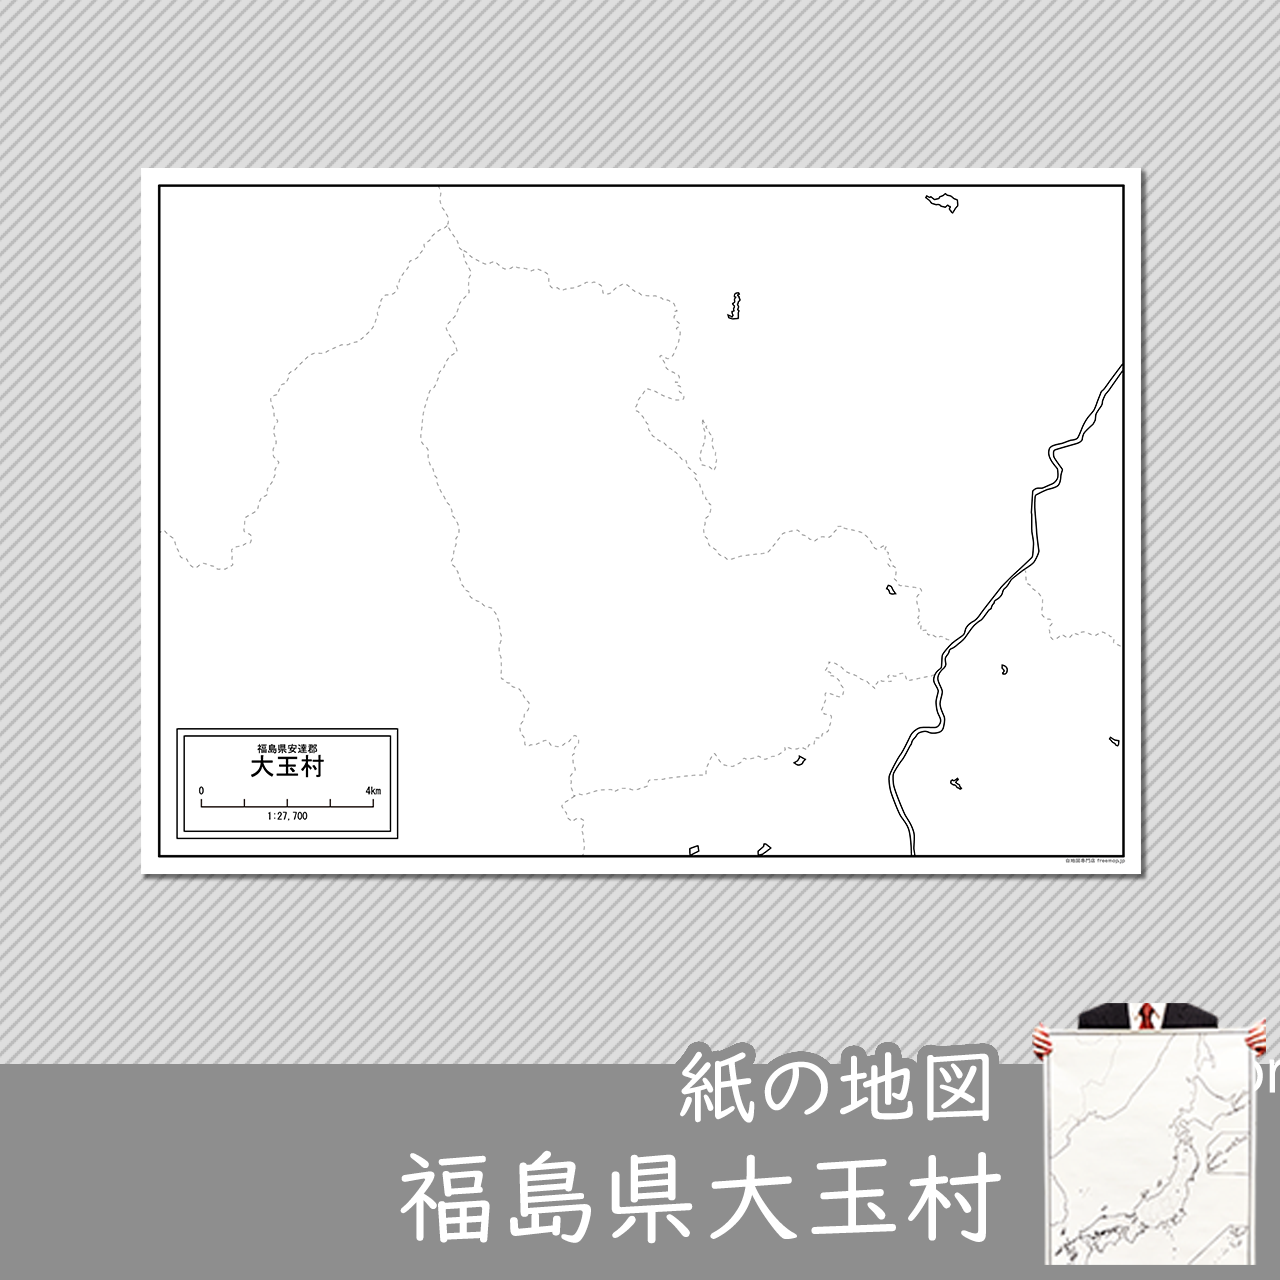 大玉村の紙の白地図のサムネイル